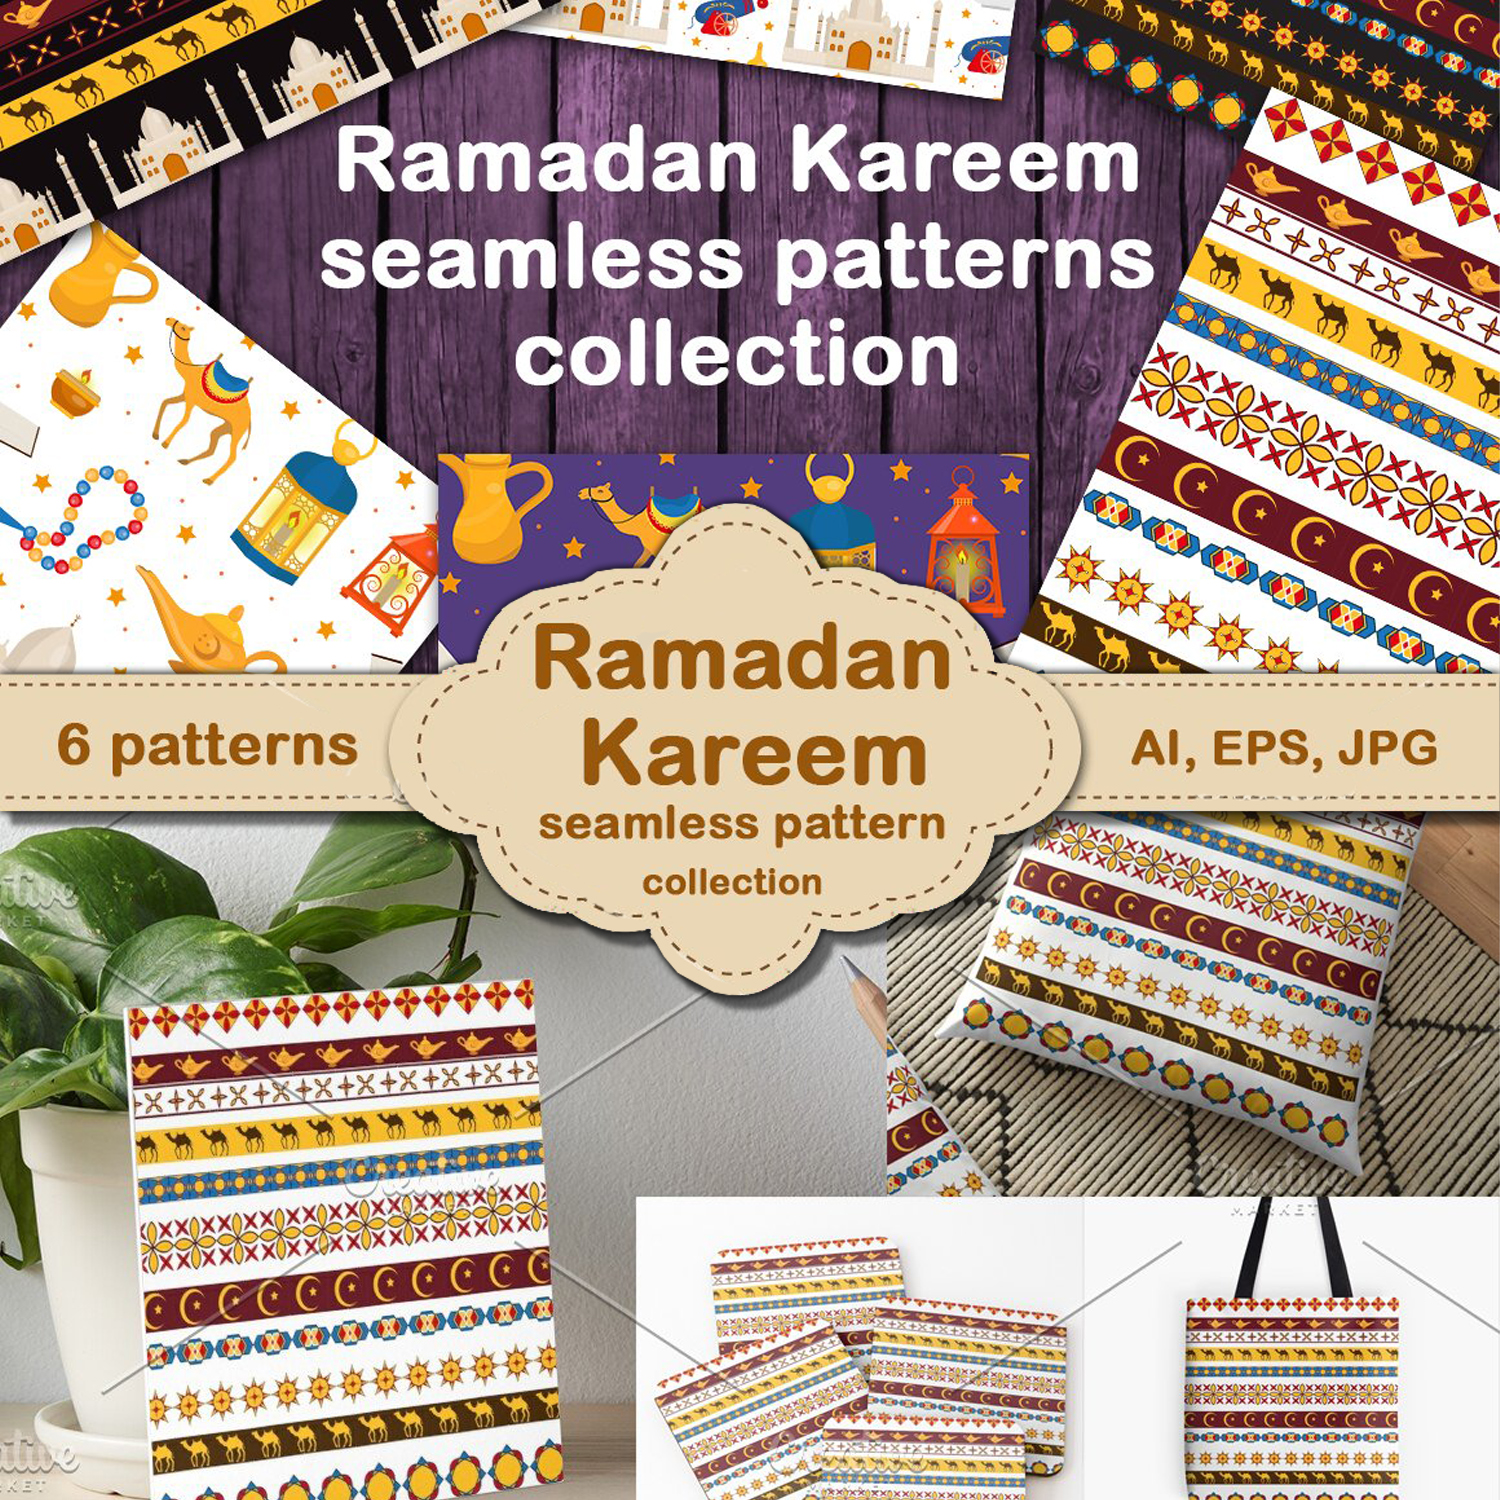 Prints of ramadan kareem pattern collection.